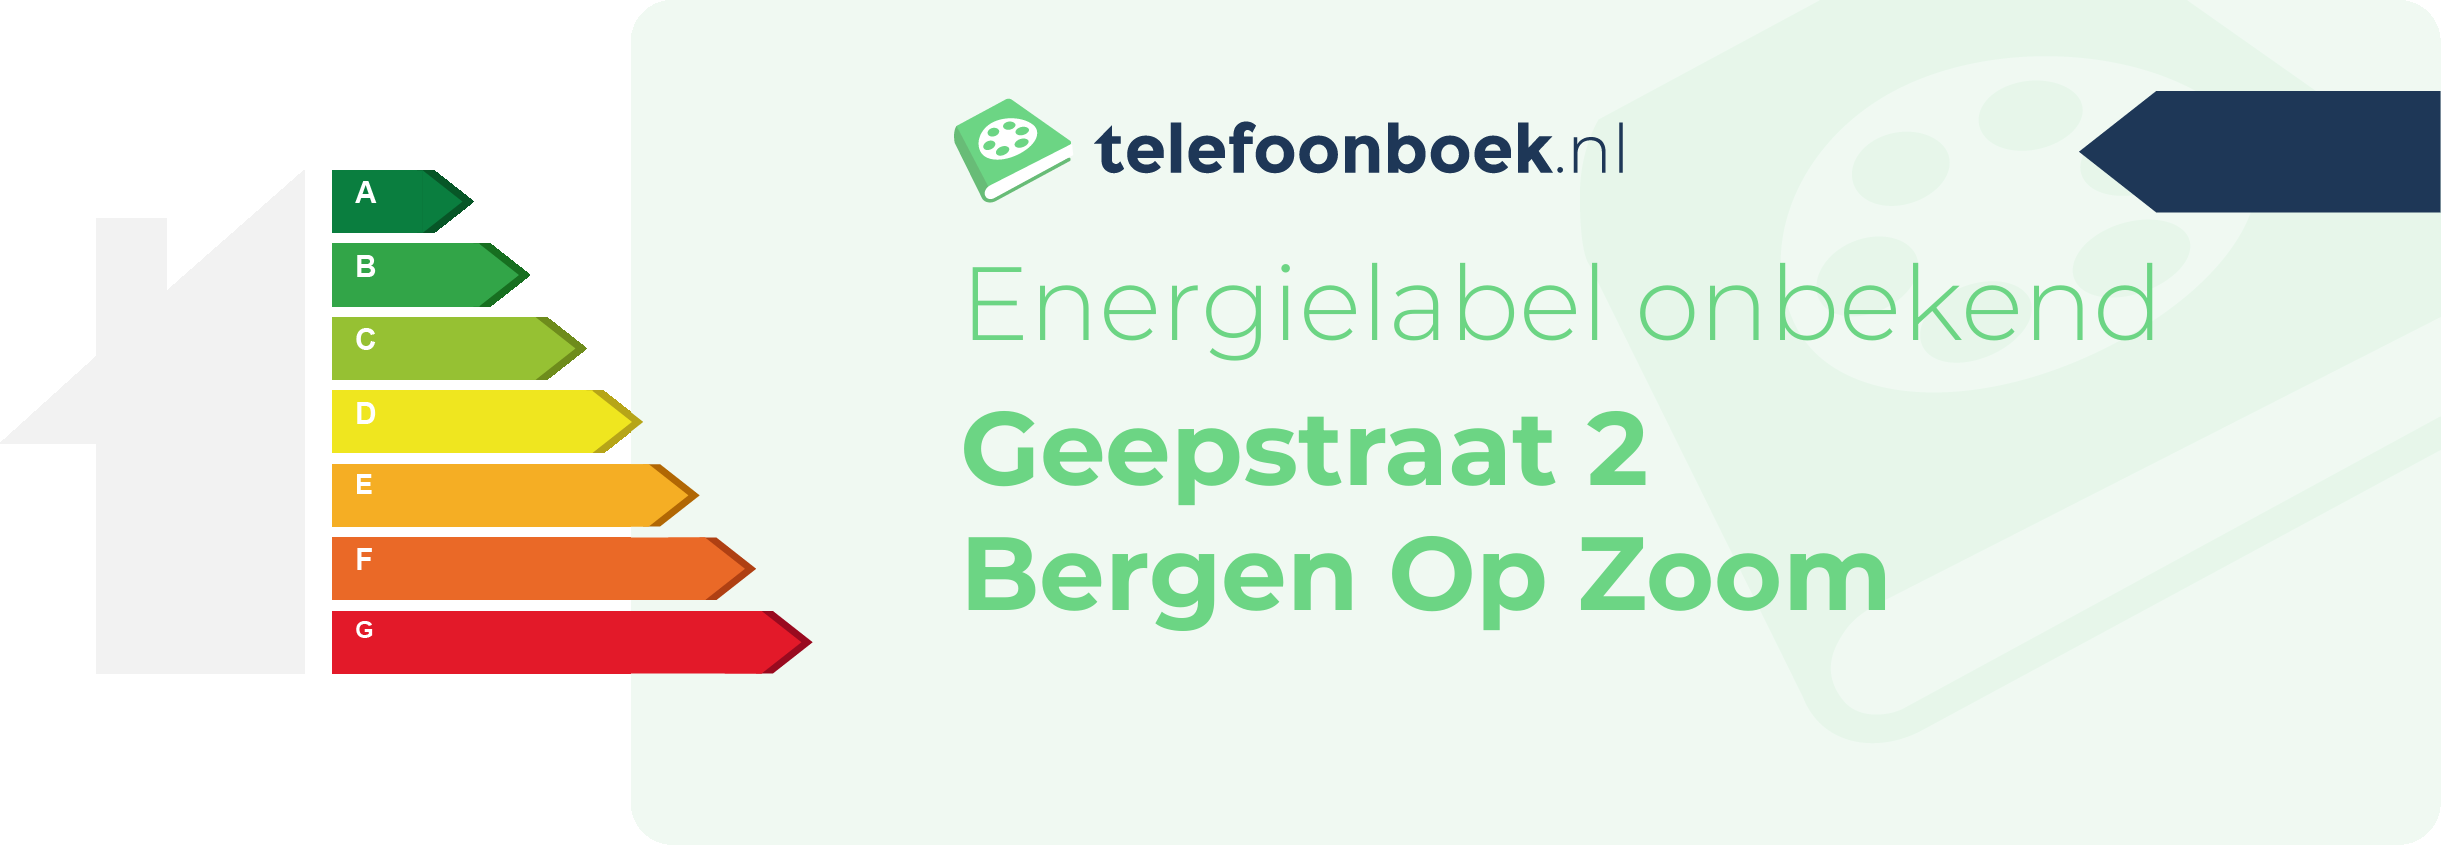 Energielabel Geepstraat 2 Bergen Op Zoom